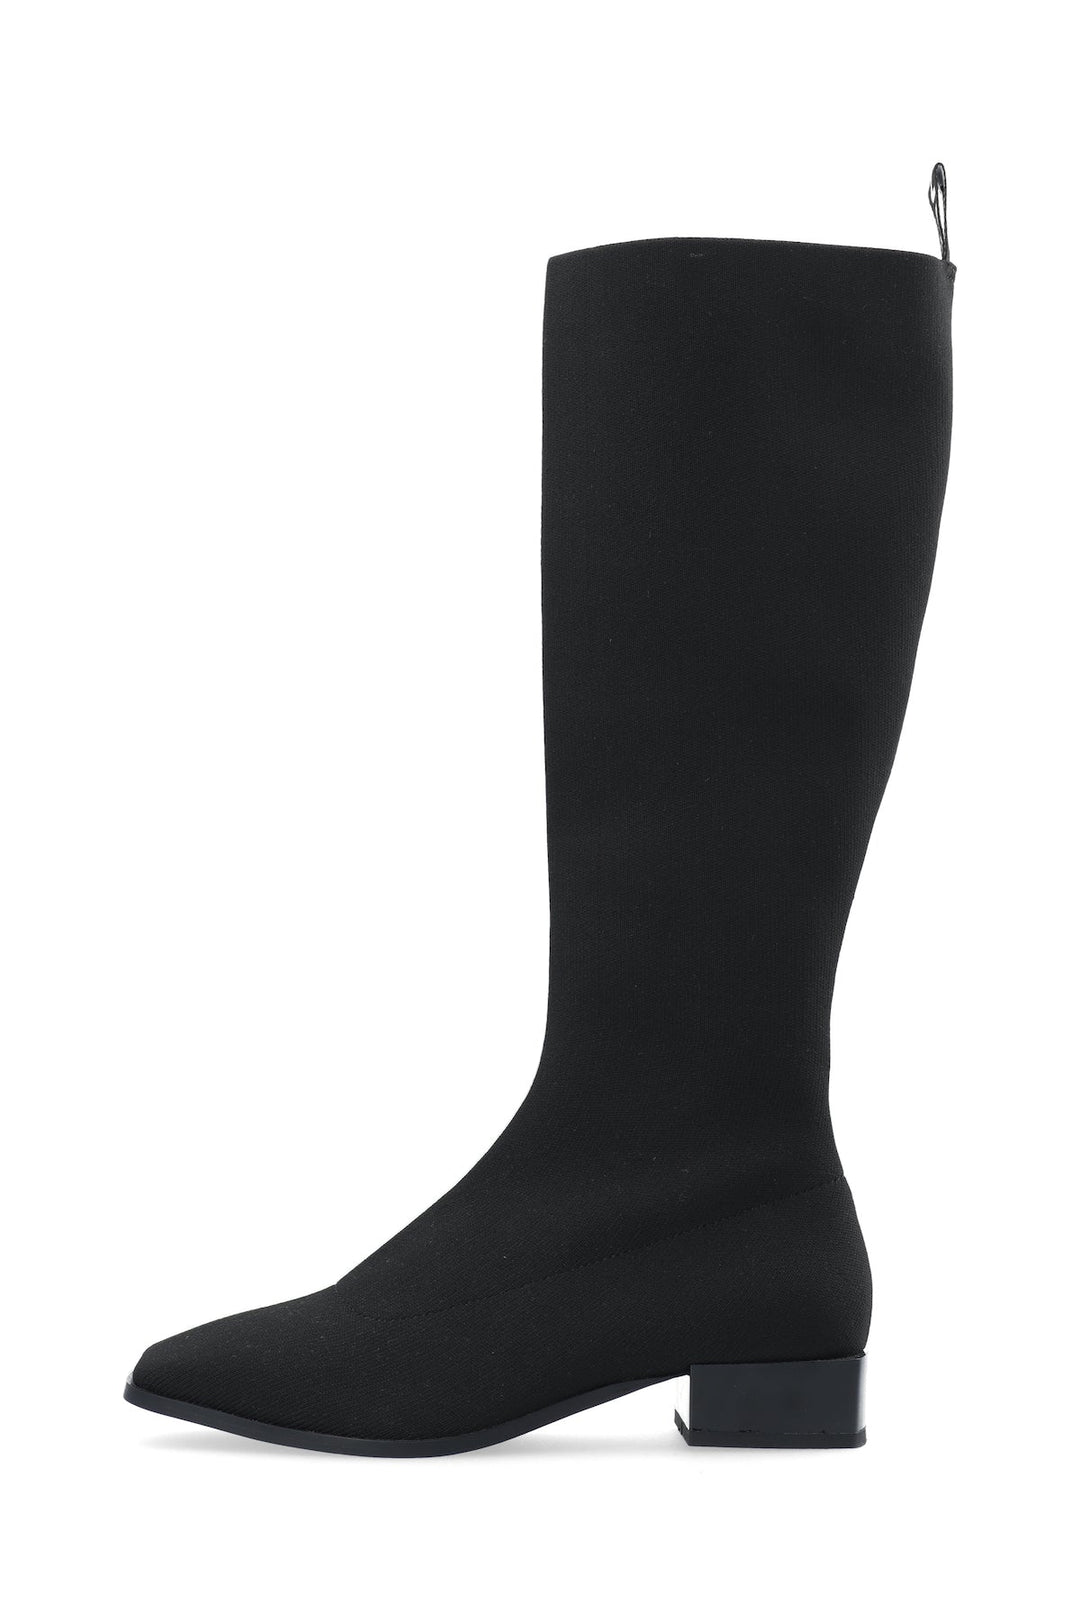 Biadiana Square Boot Knitted Black | Sko | Smuk - Dameklær på nett